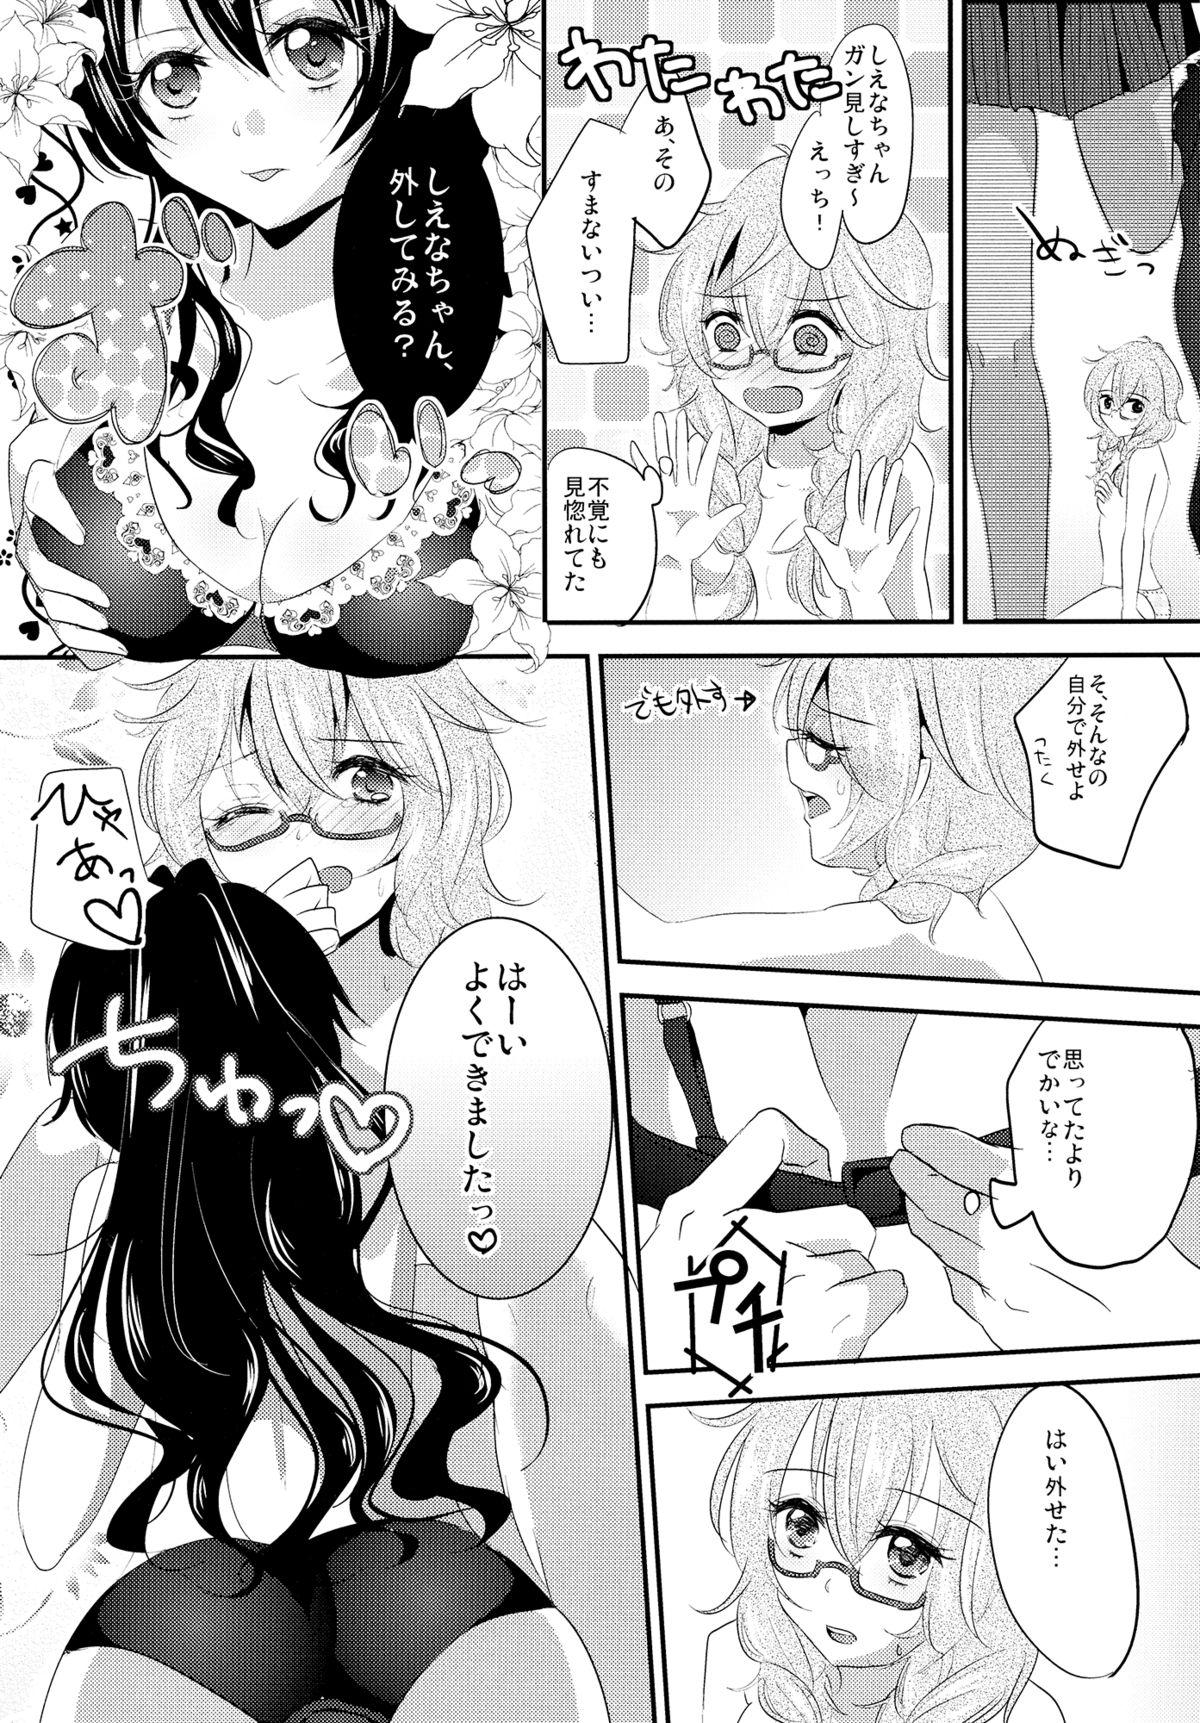 Slapping Immoral wa Totsuzen ni - Akuma no riddle Monstercock - Page 10